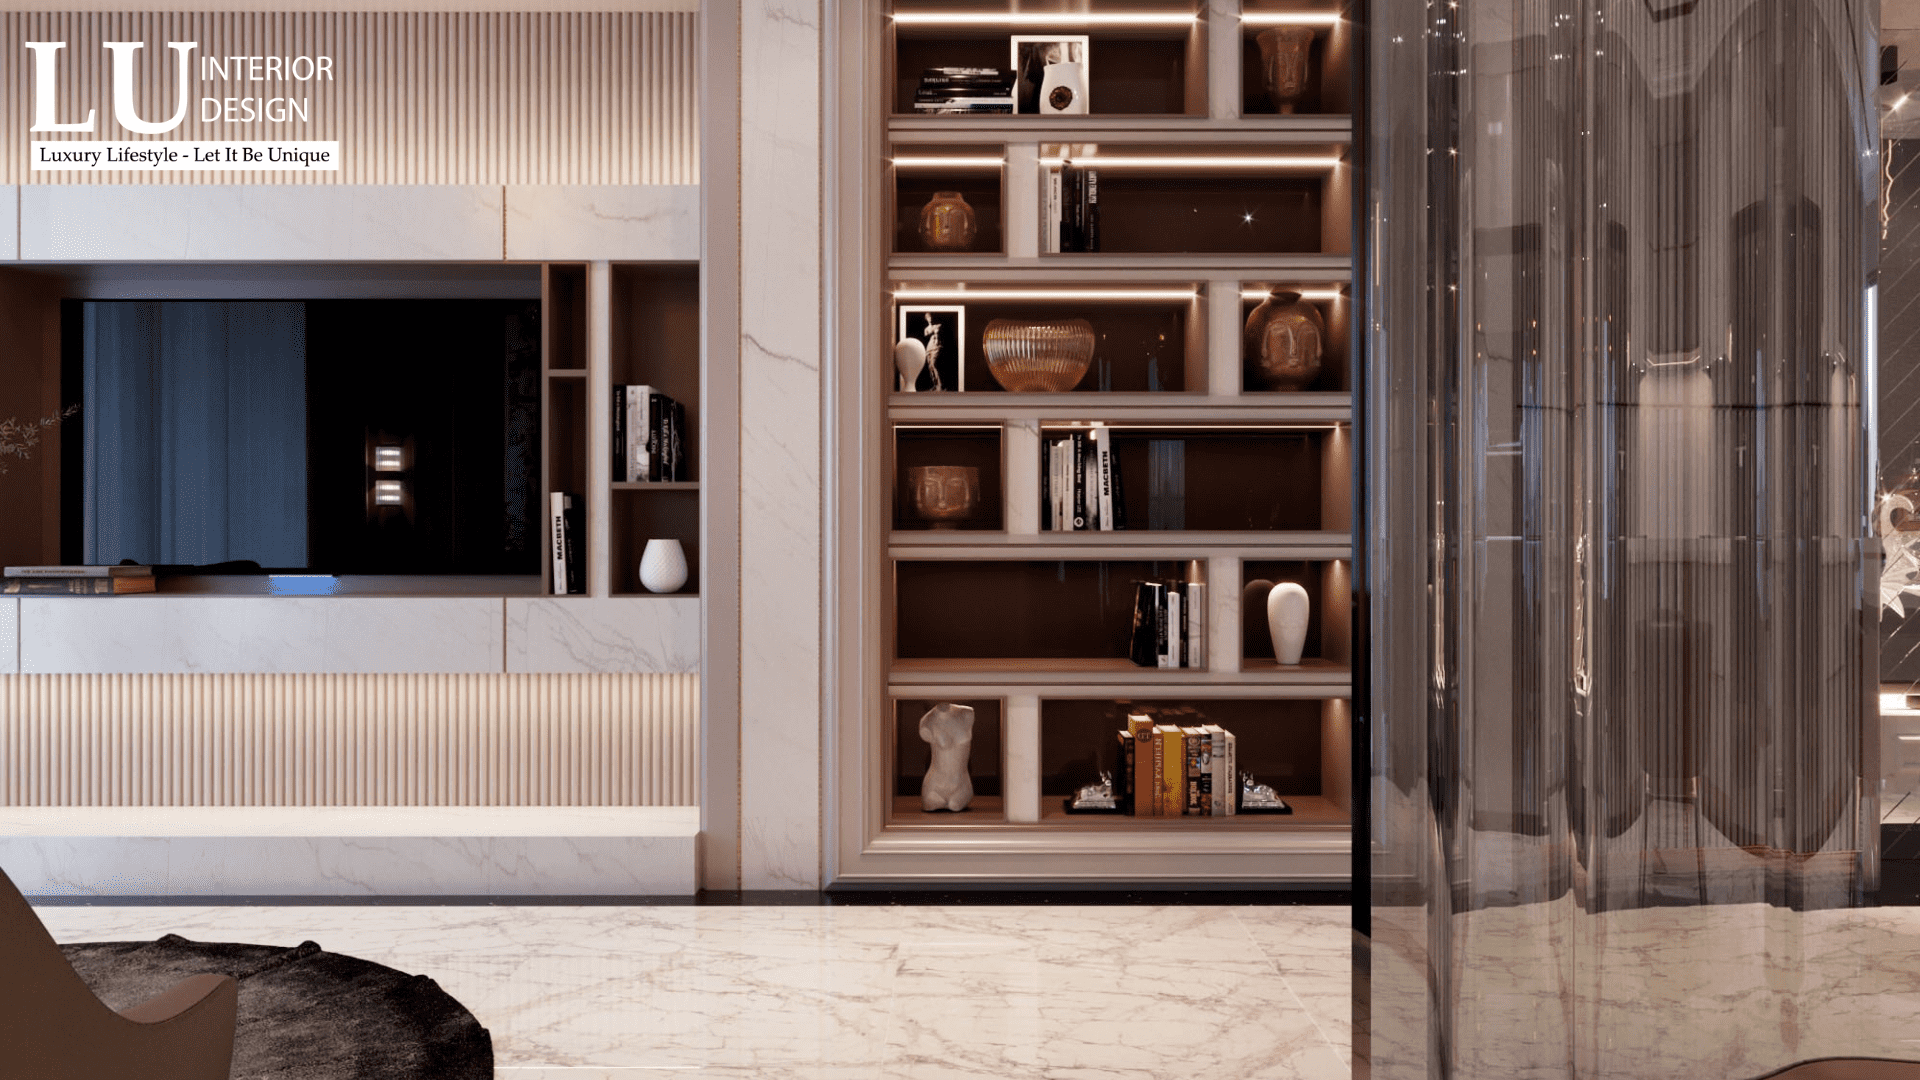 Đồ nội thất thuộc phong cách tân cổ điển nhấn mạnh chất lượng và sự sang trọng | LU Design